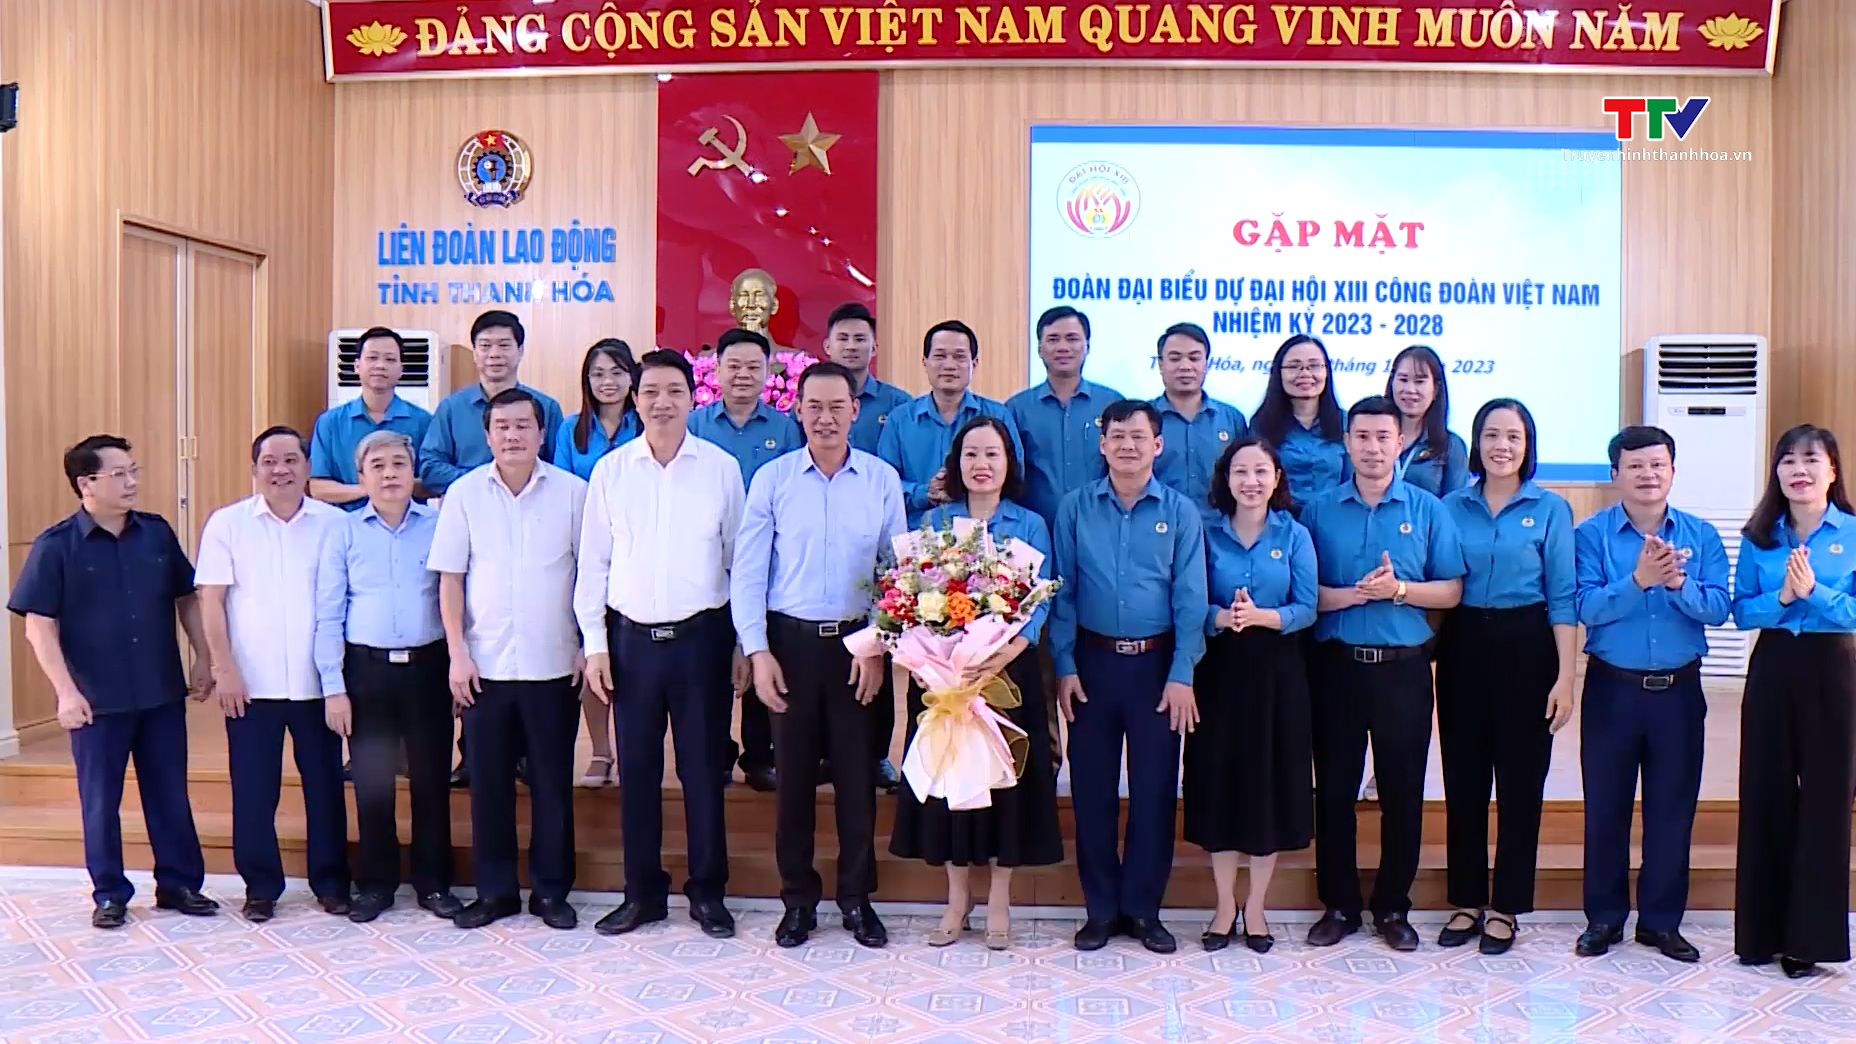 Gặp mặt đoàn đại biểu tỉnh Thanh Hoá dự Đại hội XIII Công đoàn Việt Nam- Ảnh 2.